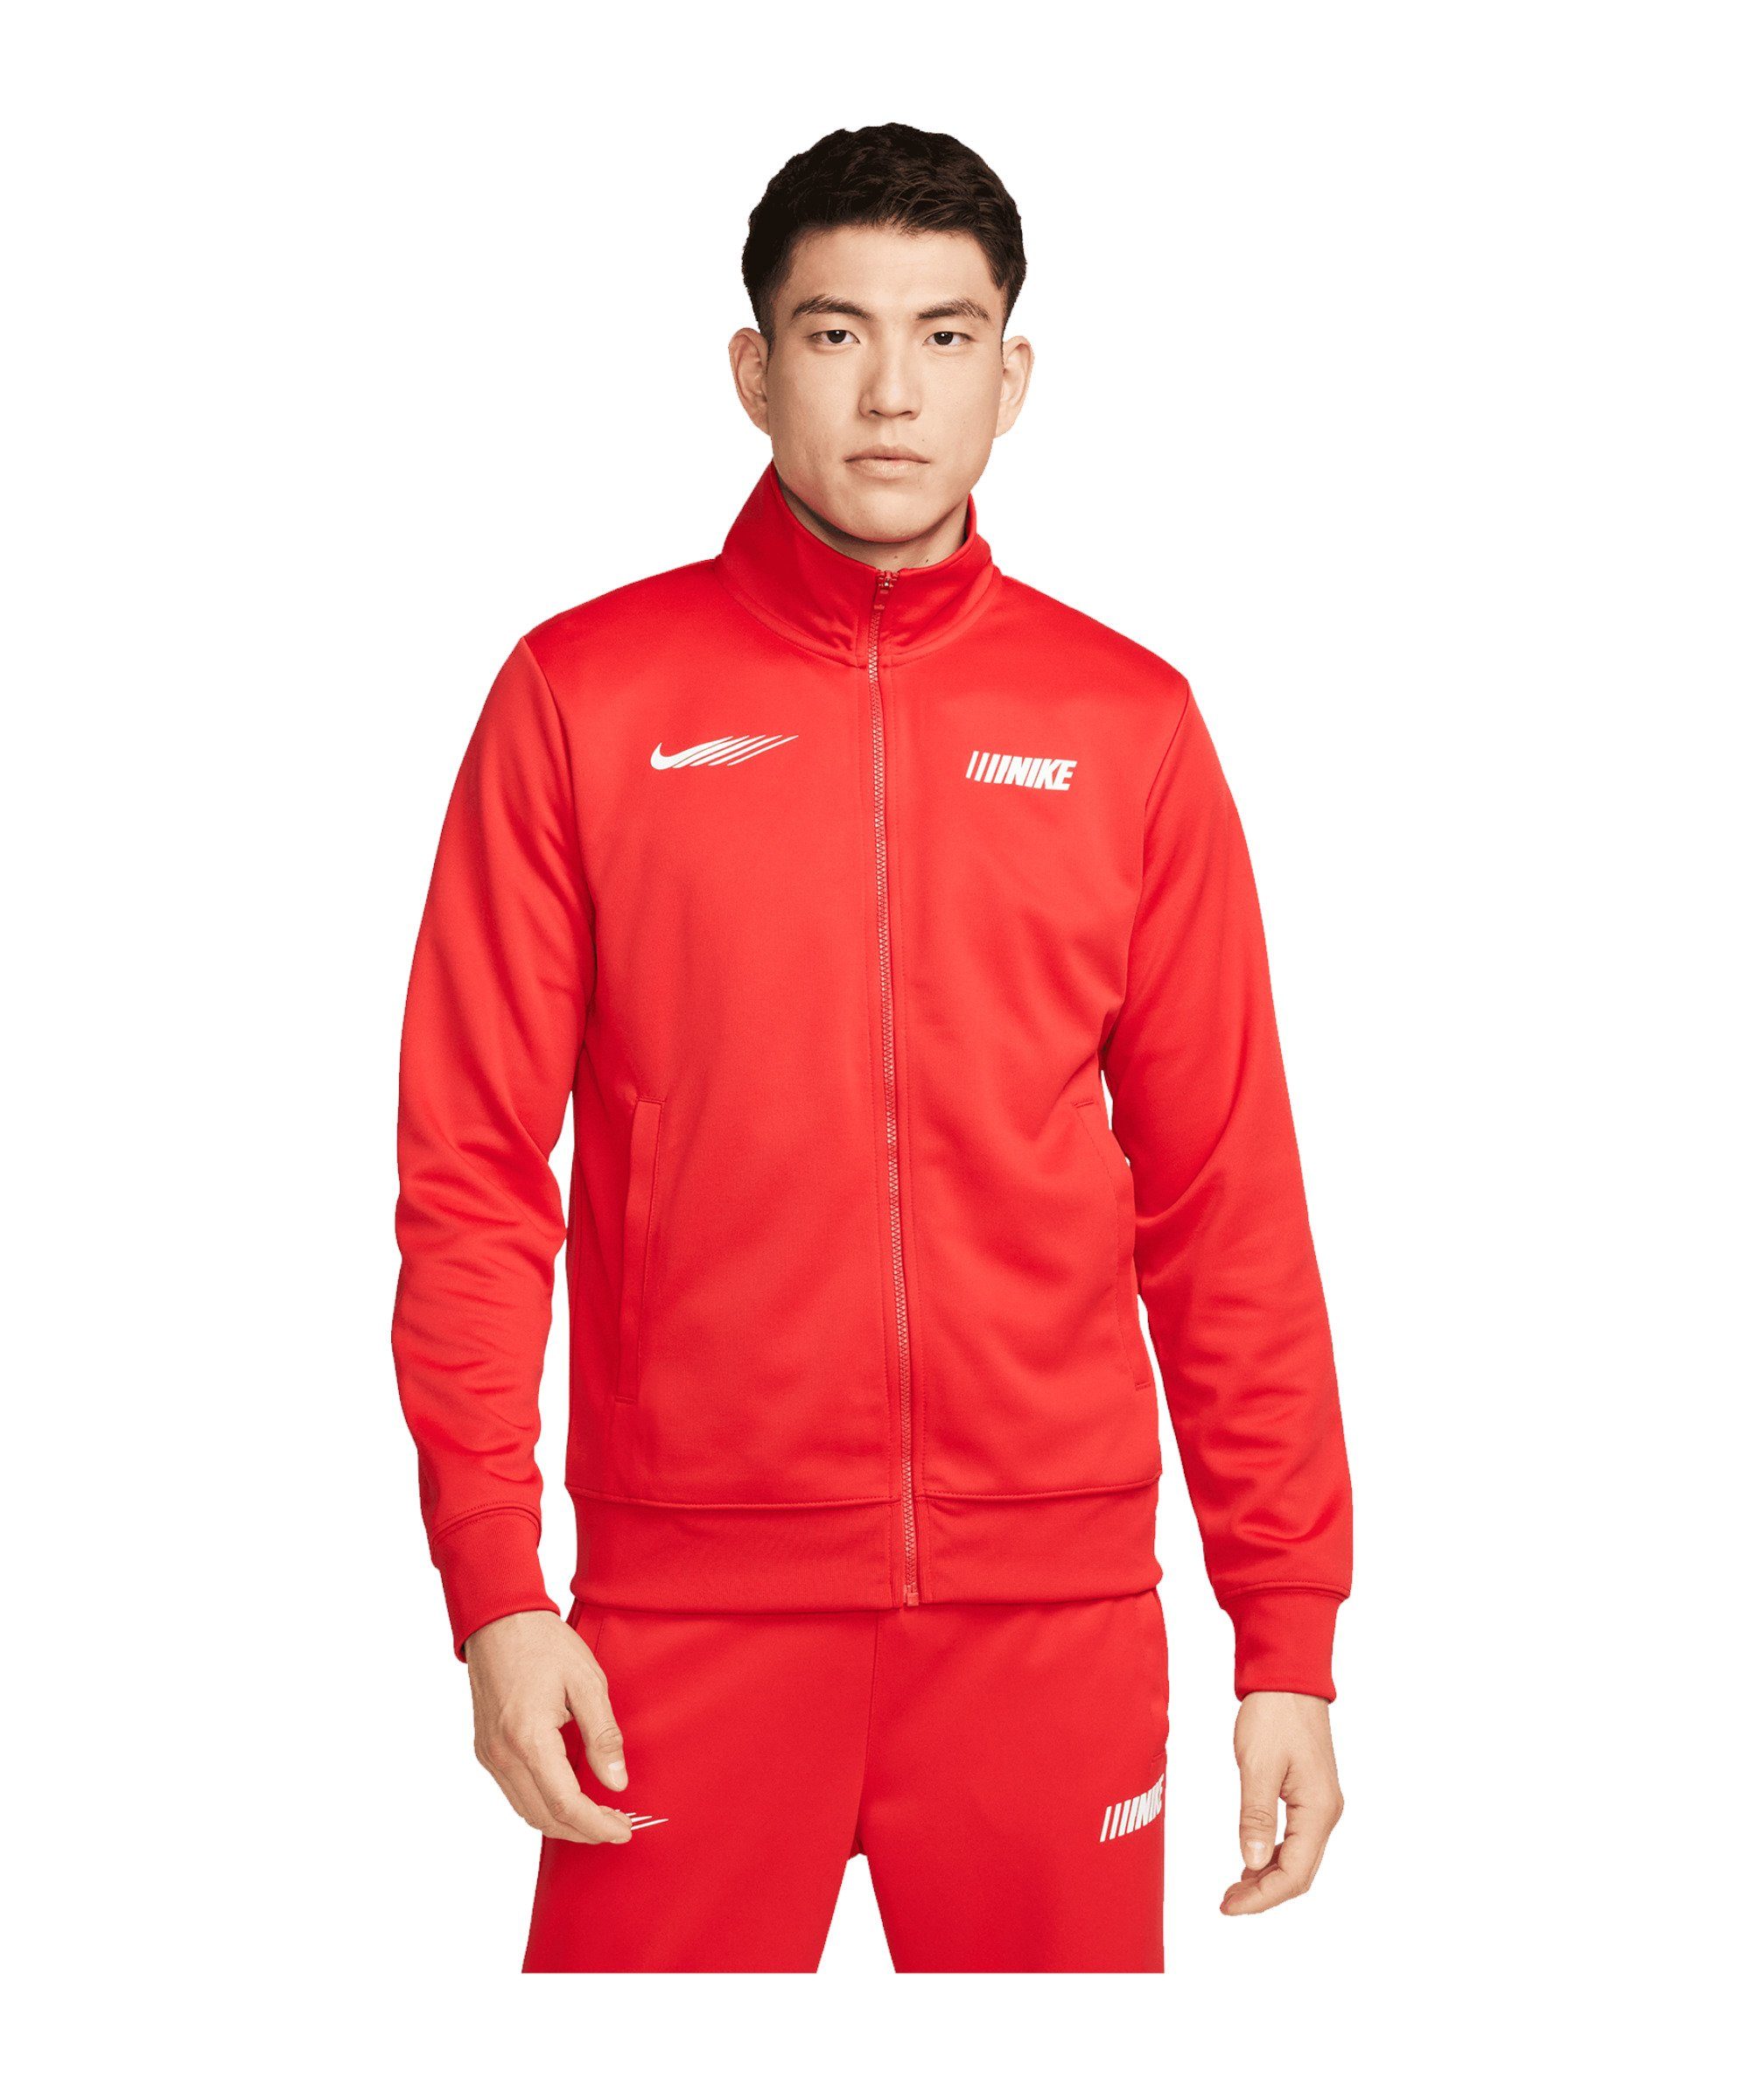 Nike Sportswear Sweatjacke Standart Issue Jacke rot